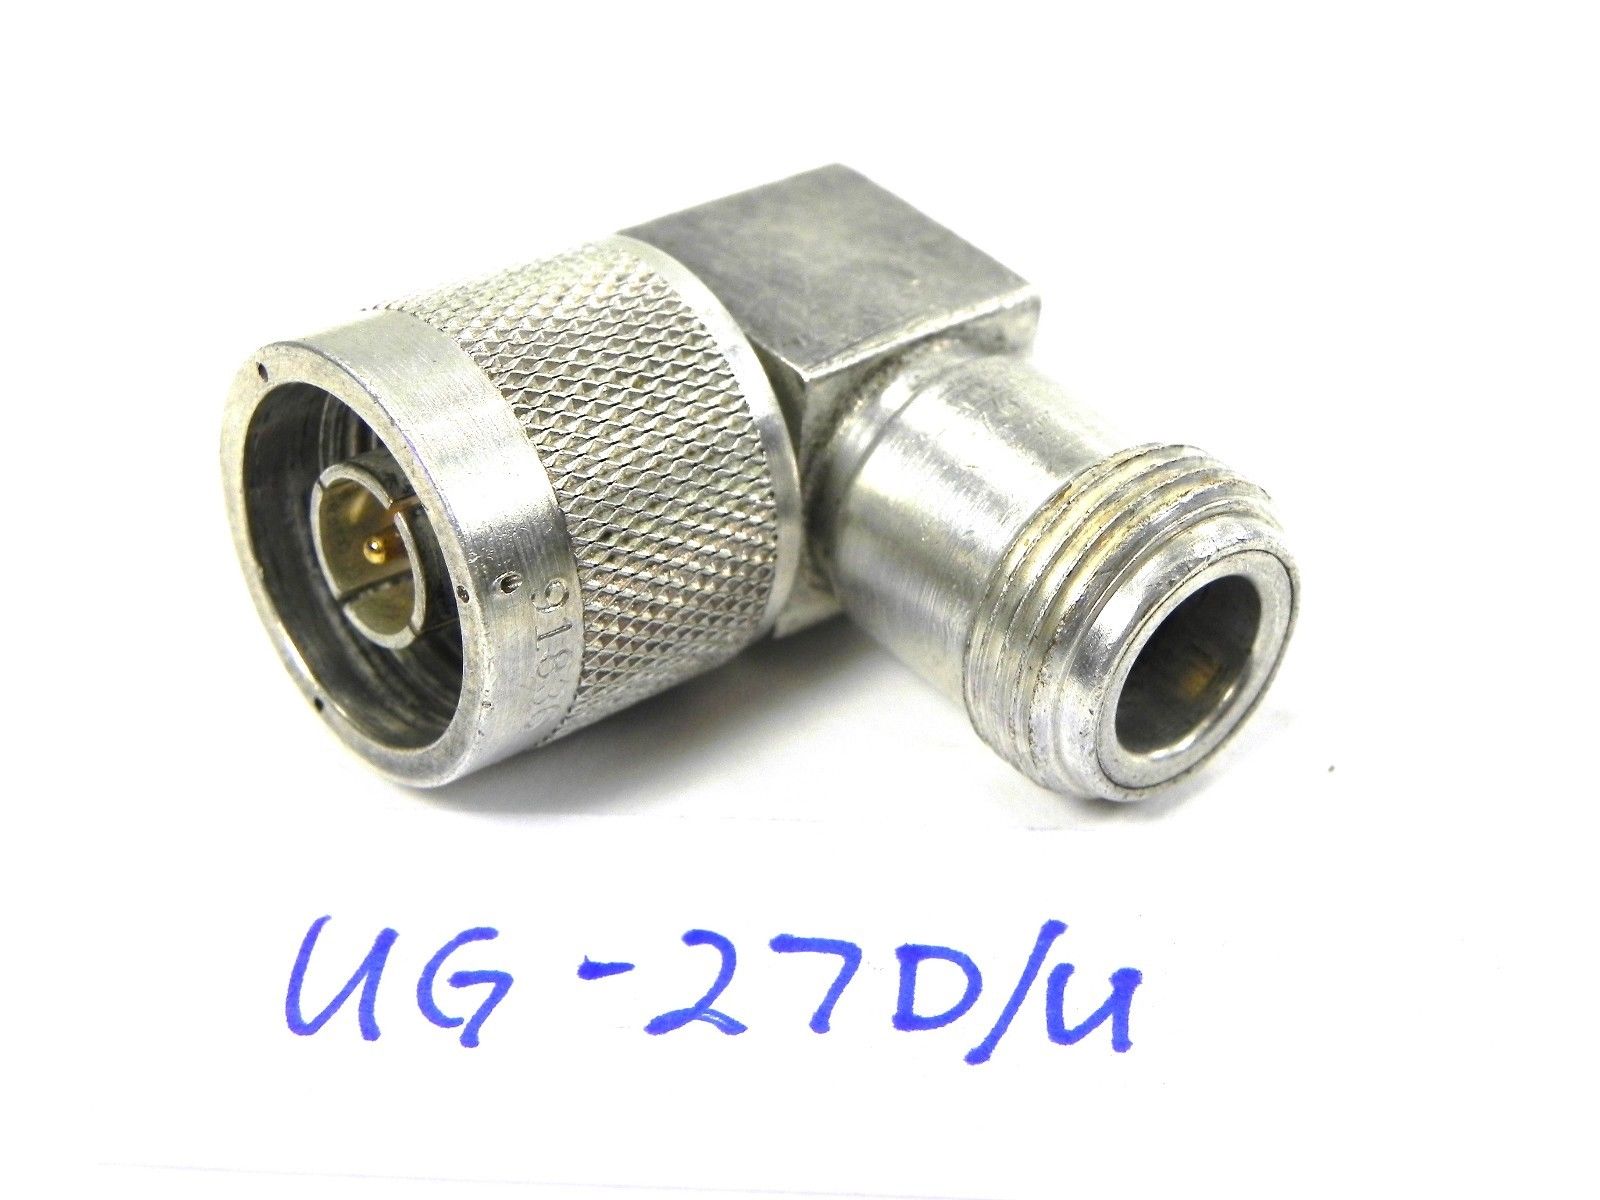 Kings UG-27D/U Adapter, N (f) – N (m) 90deg